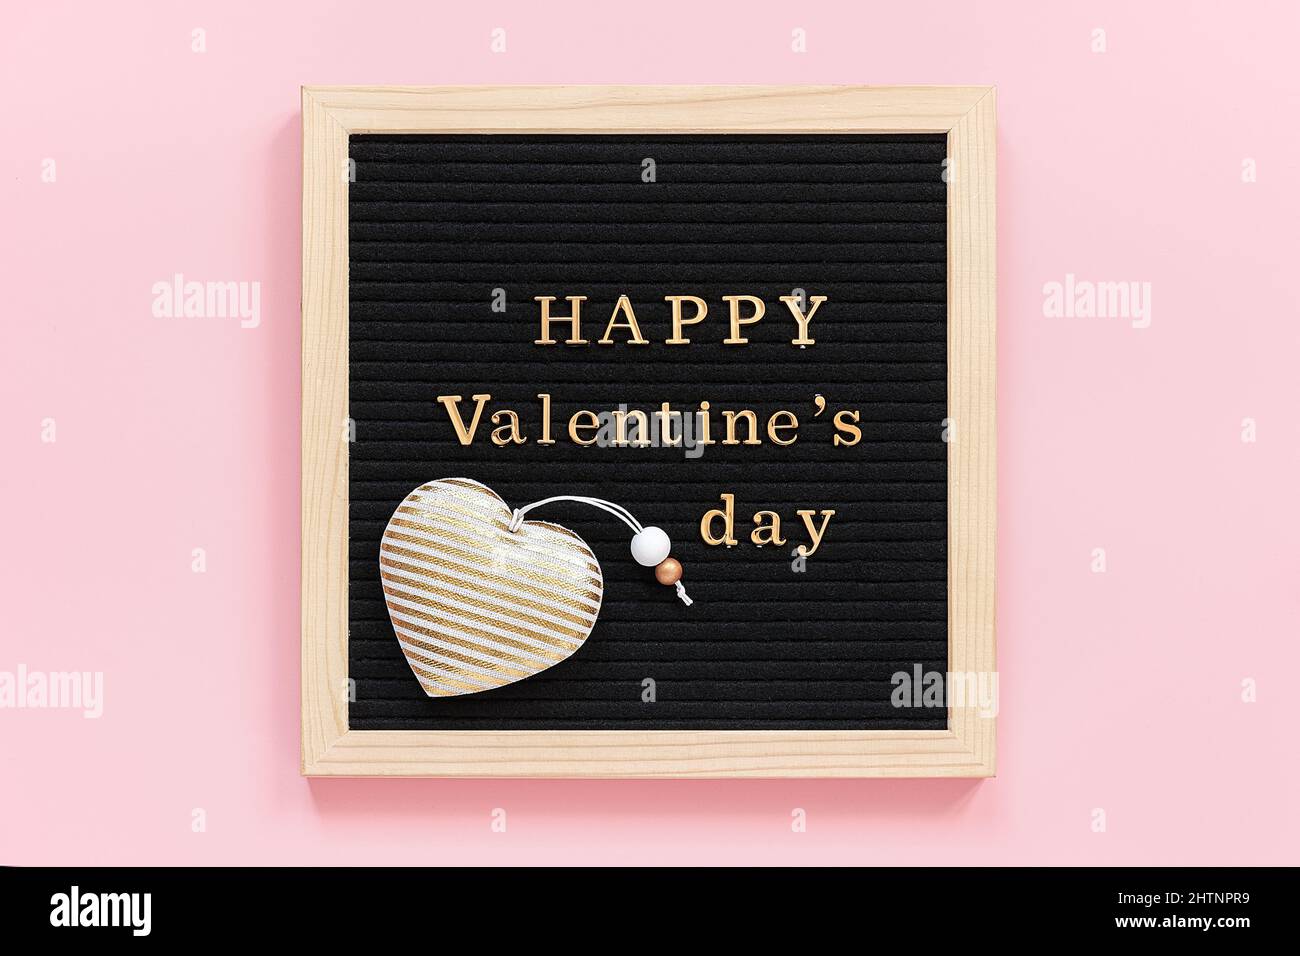 Inscription dorée Happy Valentines Day et décoration coeur textile sur carton noir, composition centrale sur fond rose. Modèle pour Valen Banque D'Images